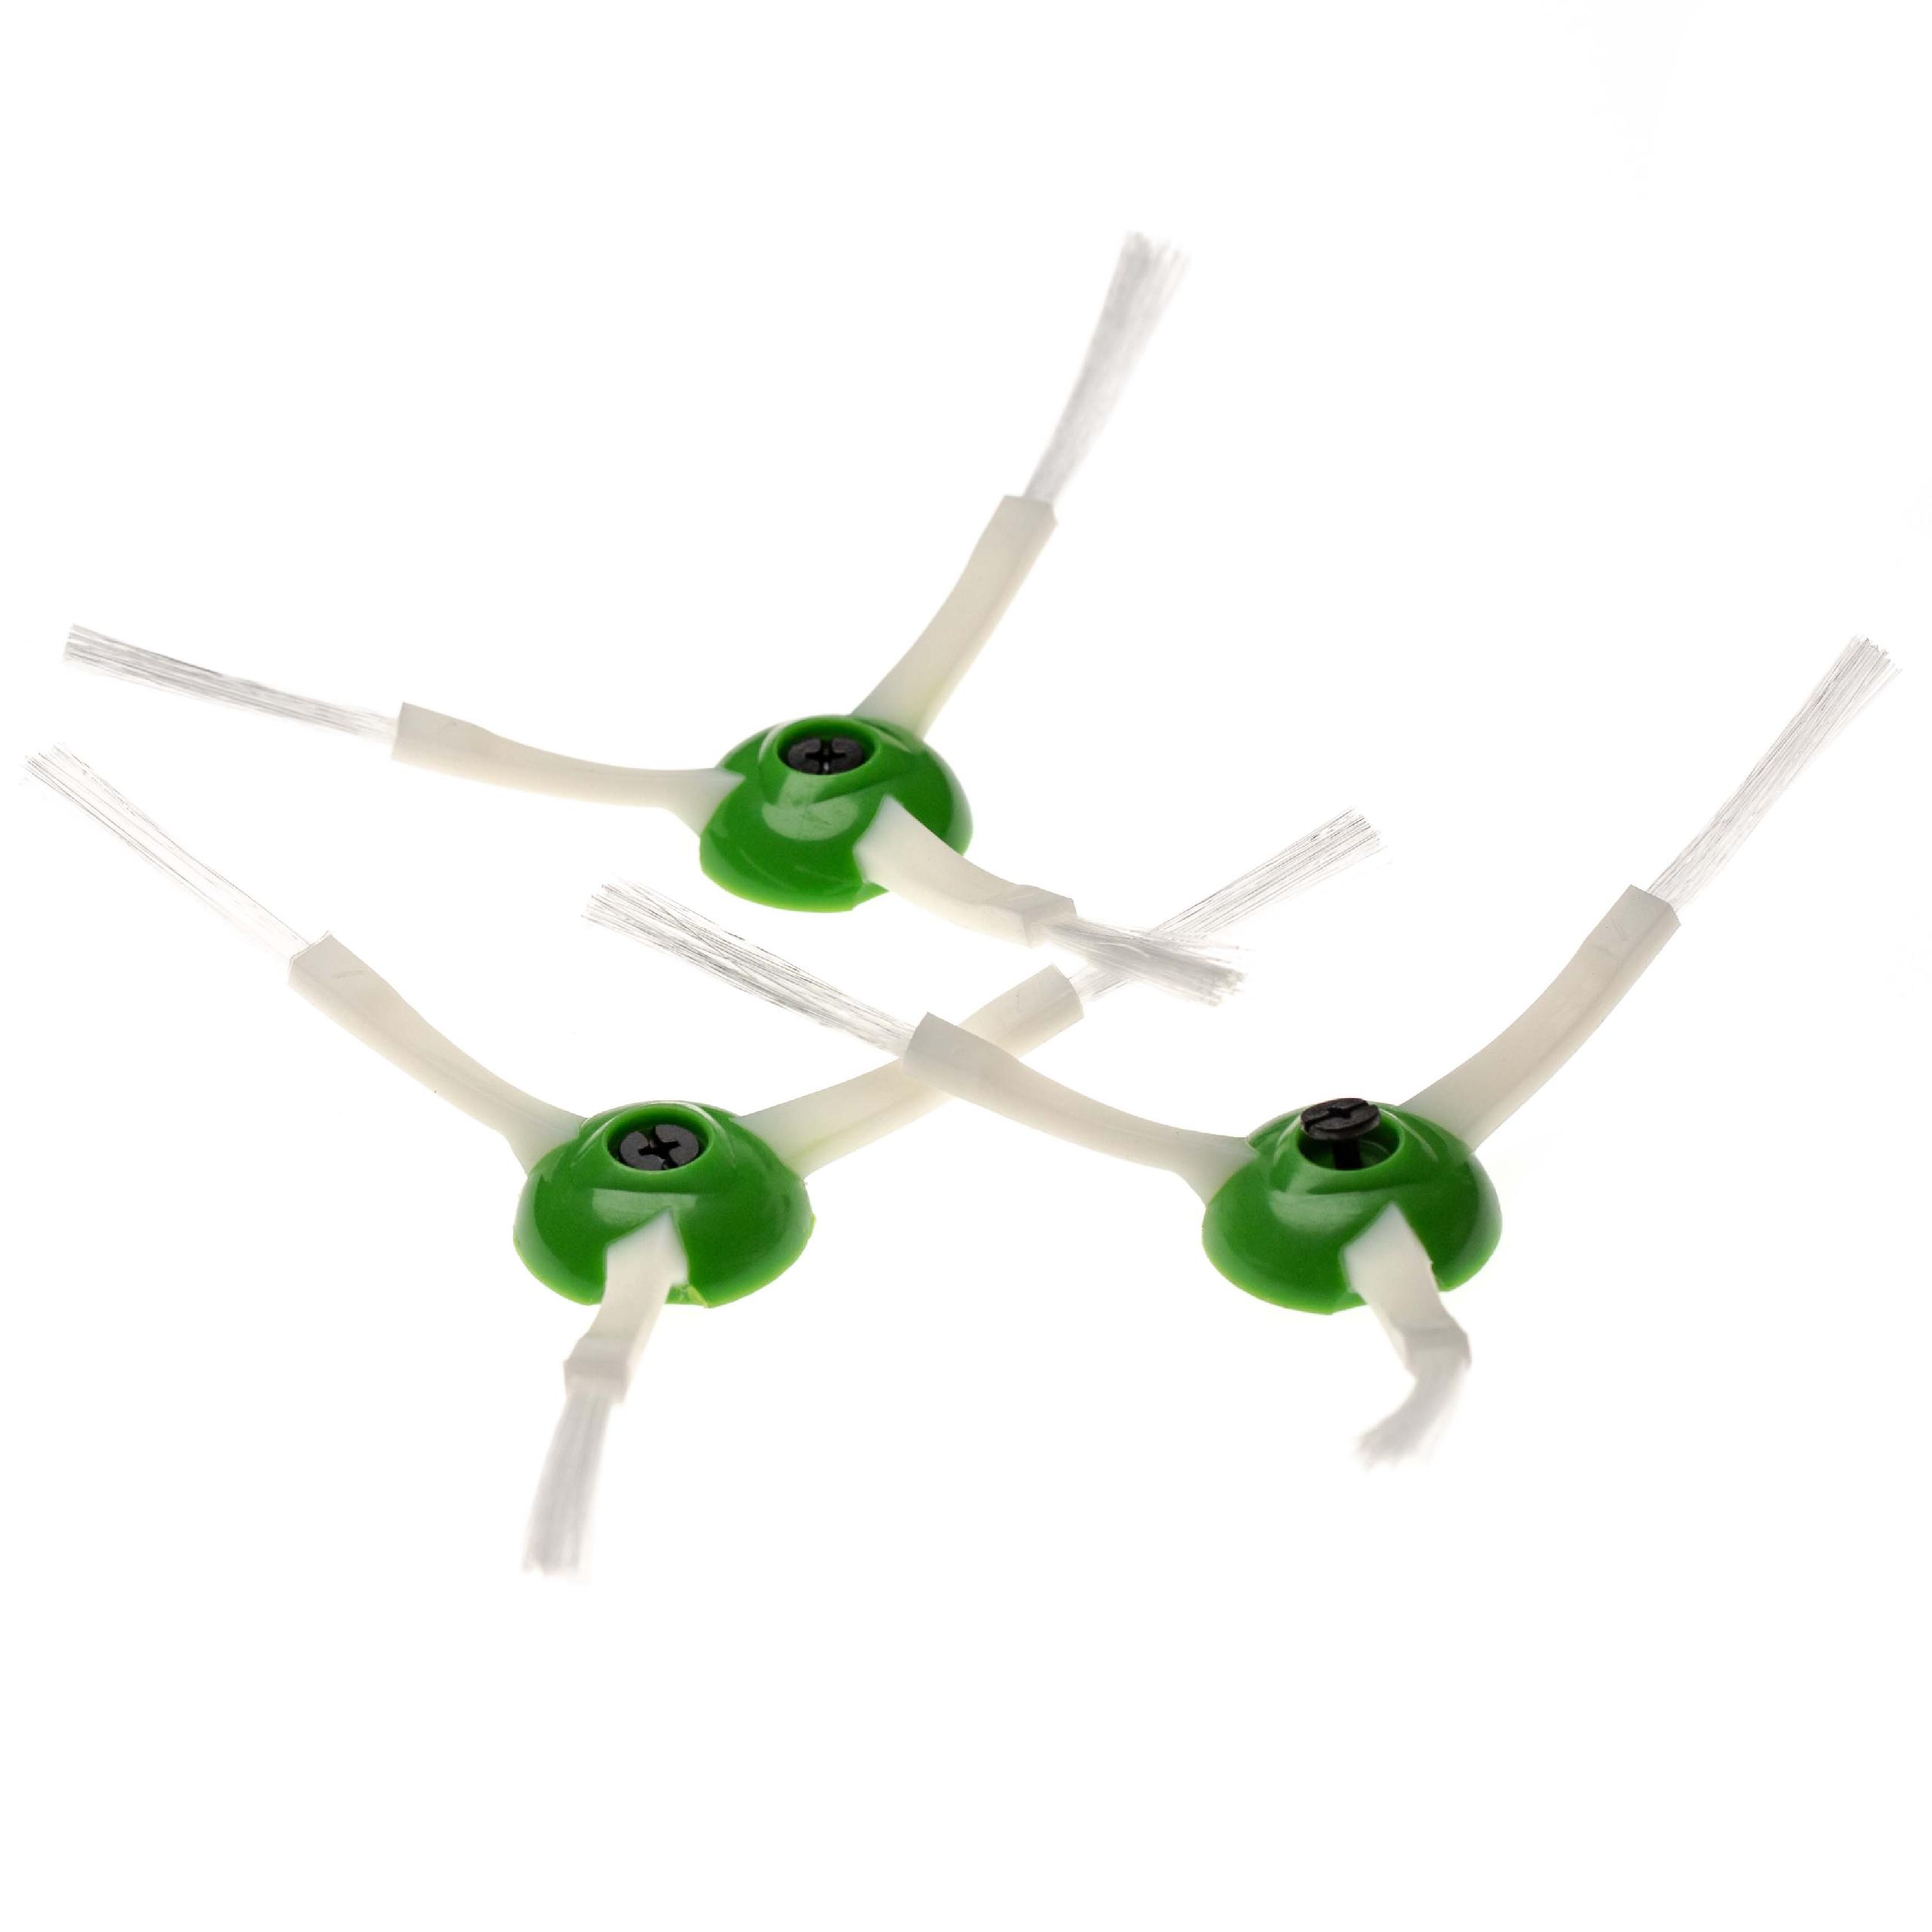 3x Cepillo lateral 3 brazos para robot aspirador iRobot Roomba E5 - Set de cepillos blanco / verde